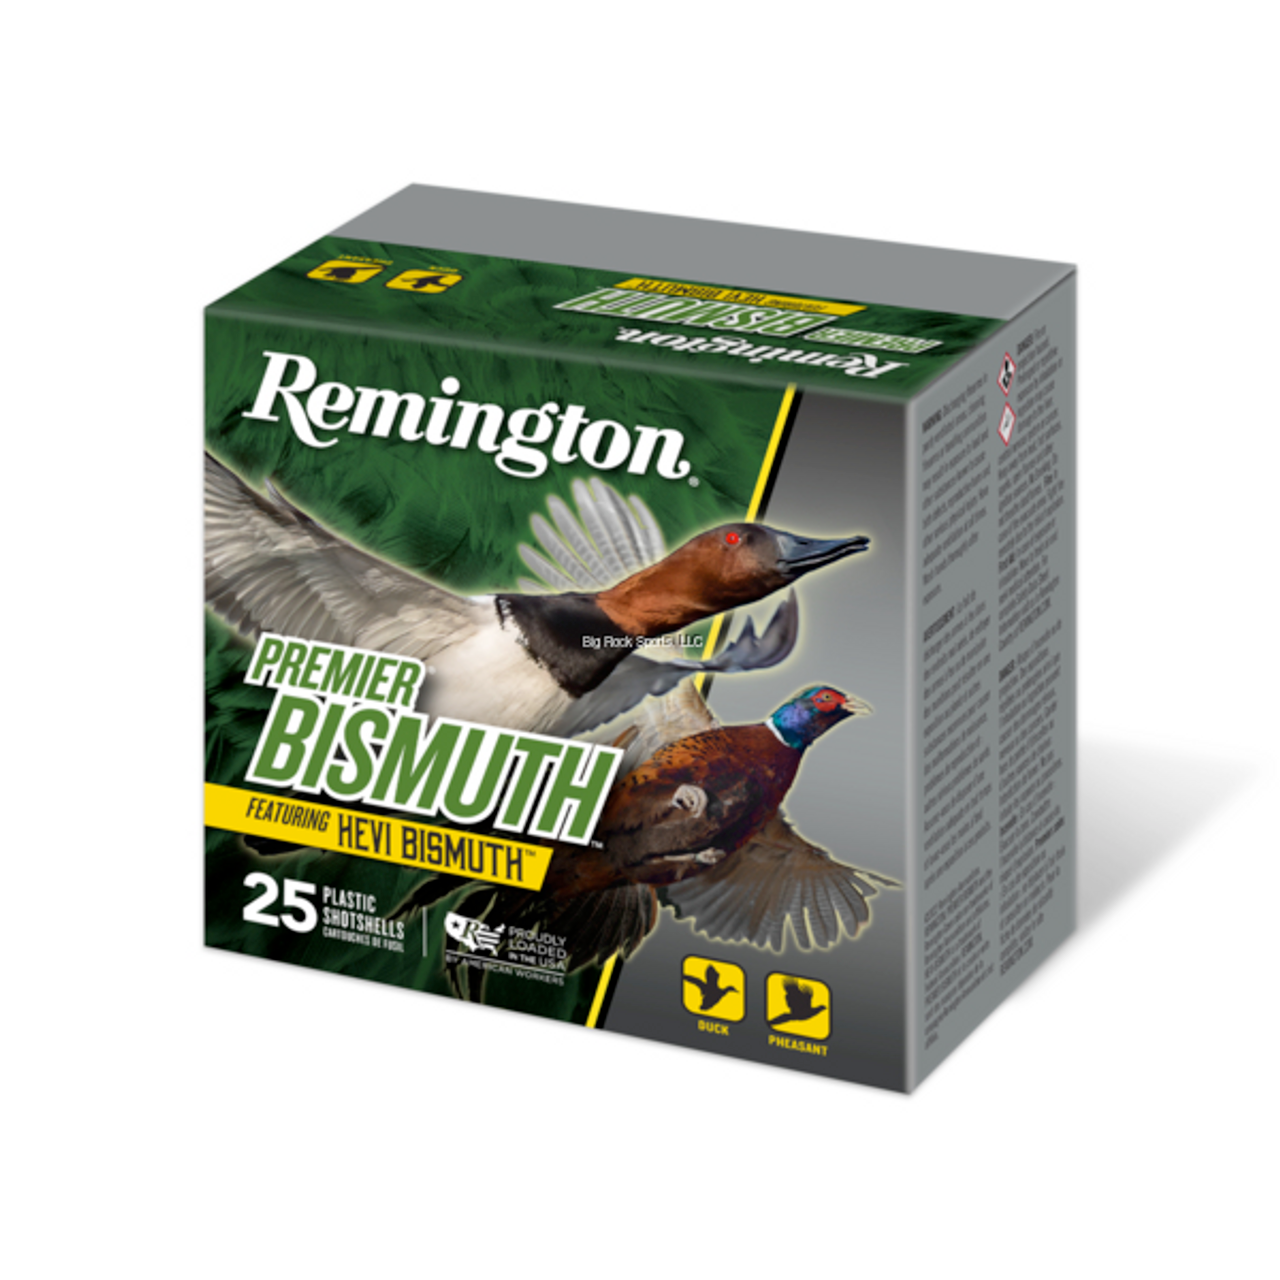 Remington Shotshell 12 GA, 3 ", 1.375 OZ, #2 Bismuth, Box of 25